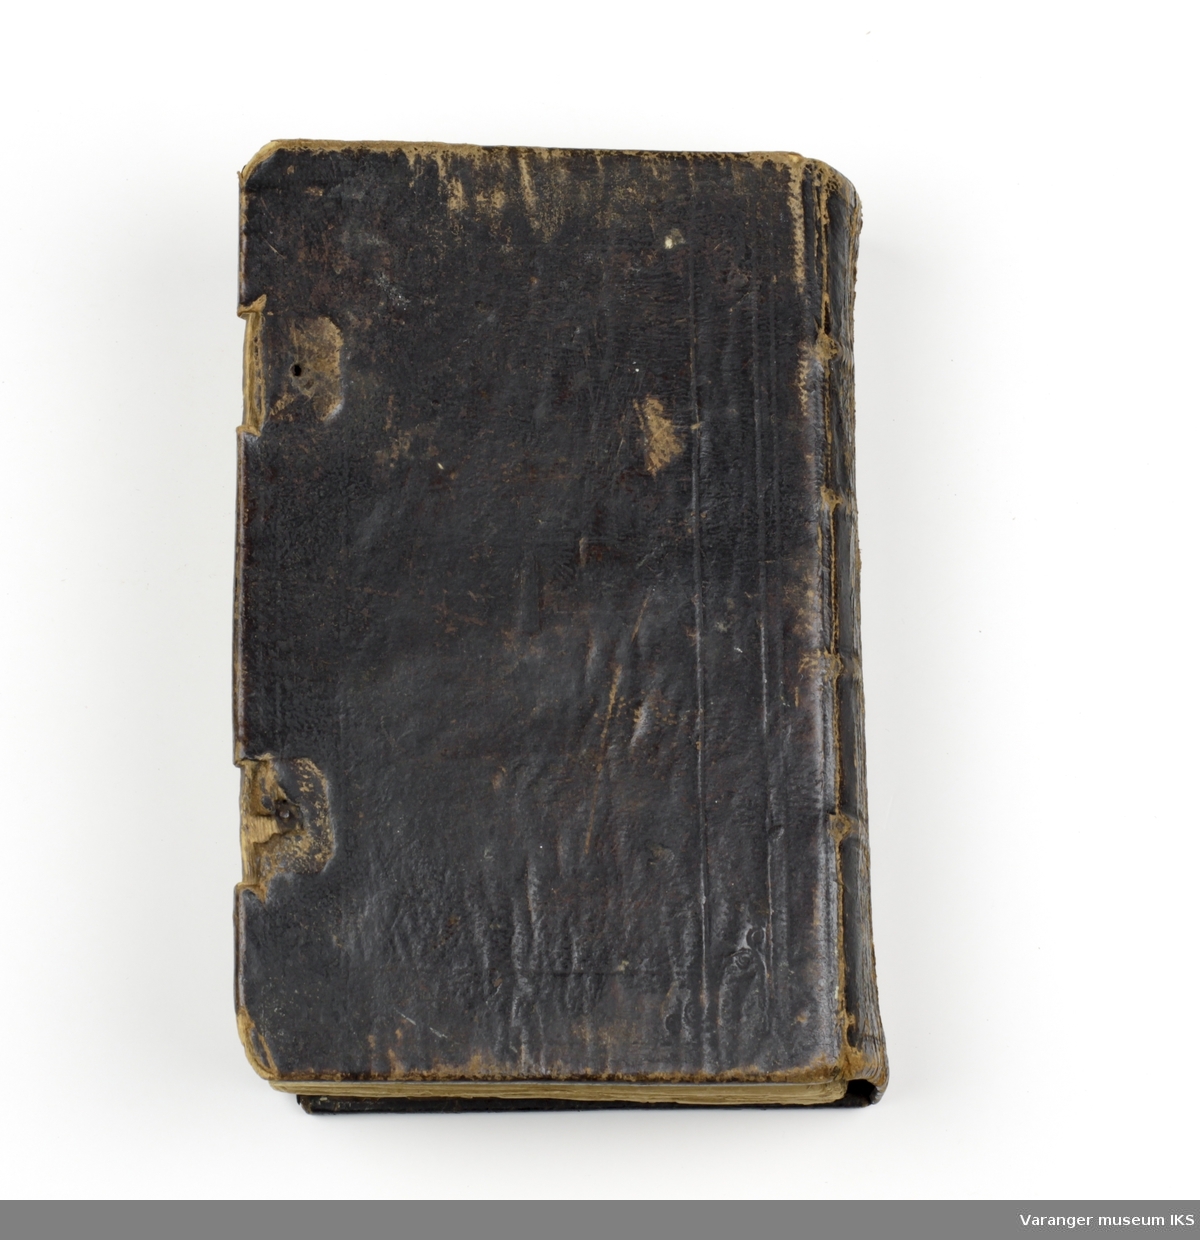 Finsk salmebok utgitt i 1862. Skinnbelagte permer i tre. Preget dekor foran og bak, men svært slitt. Det har vært en lukke/låseanordning for å holde boken lukket, men denne har blitt ødelagt.